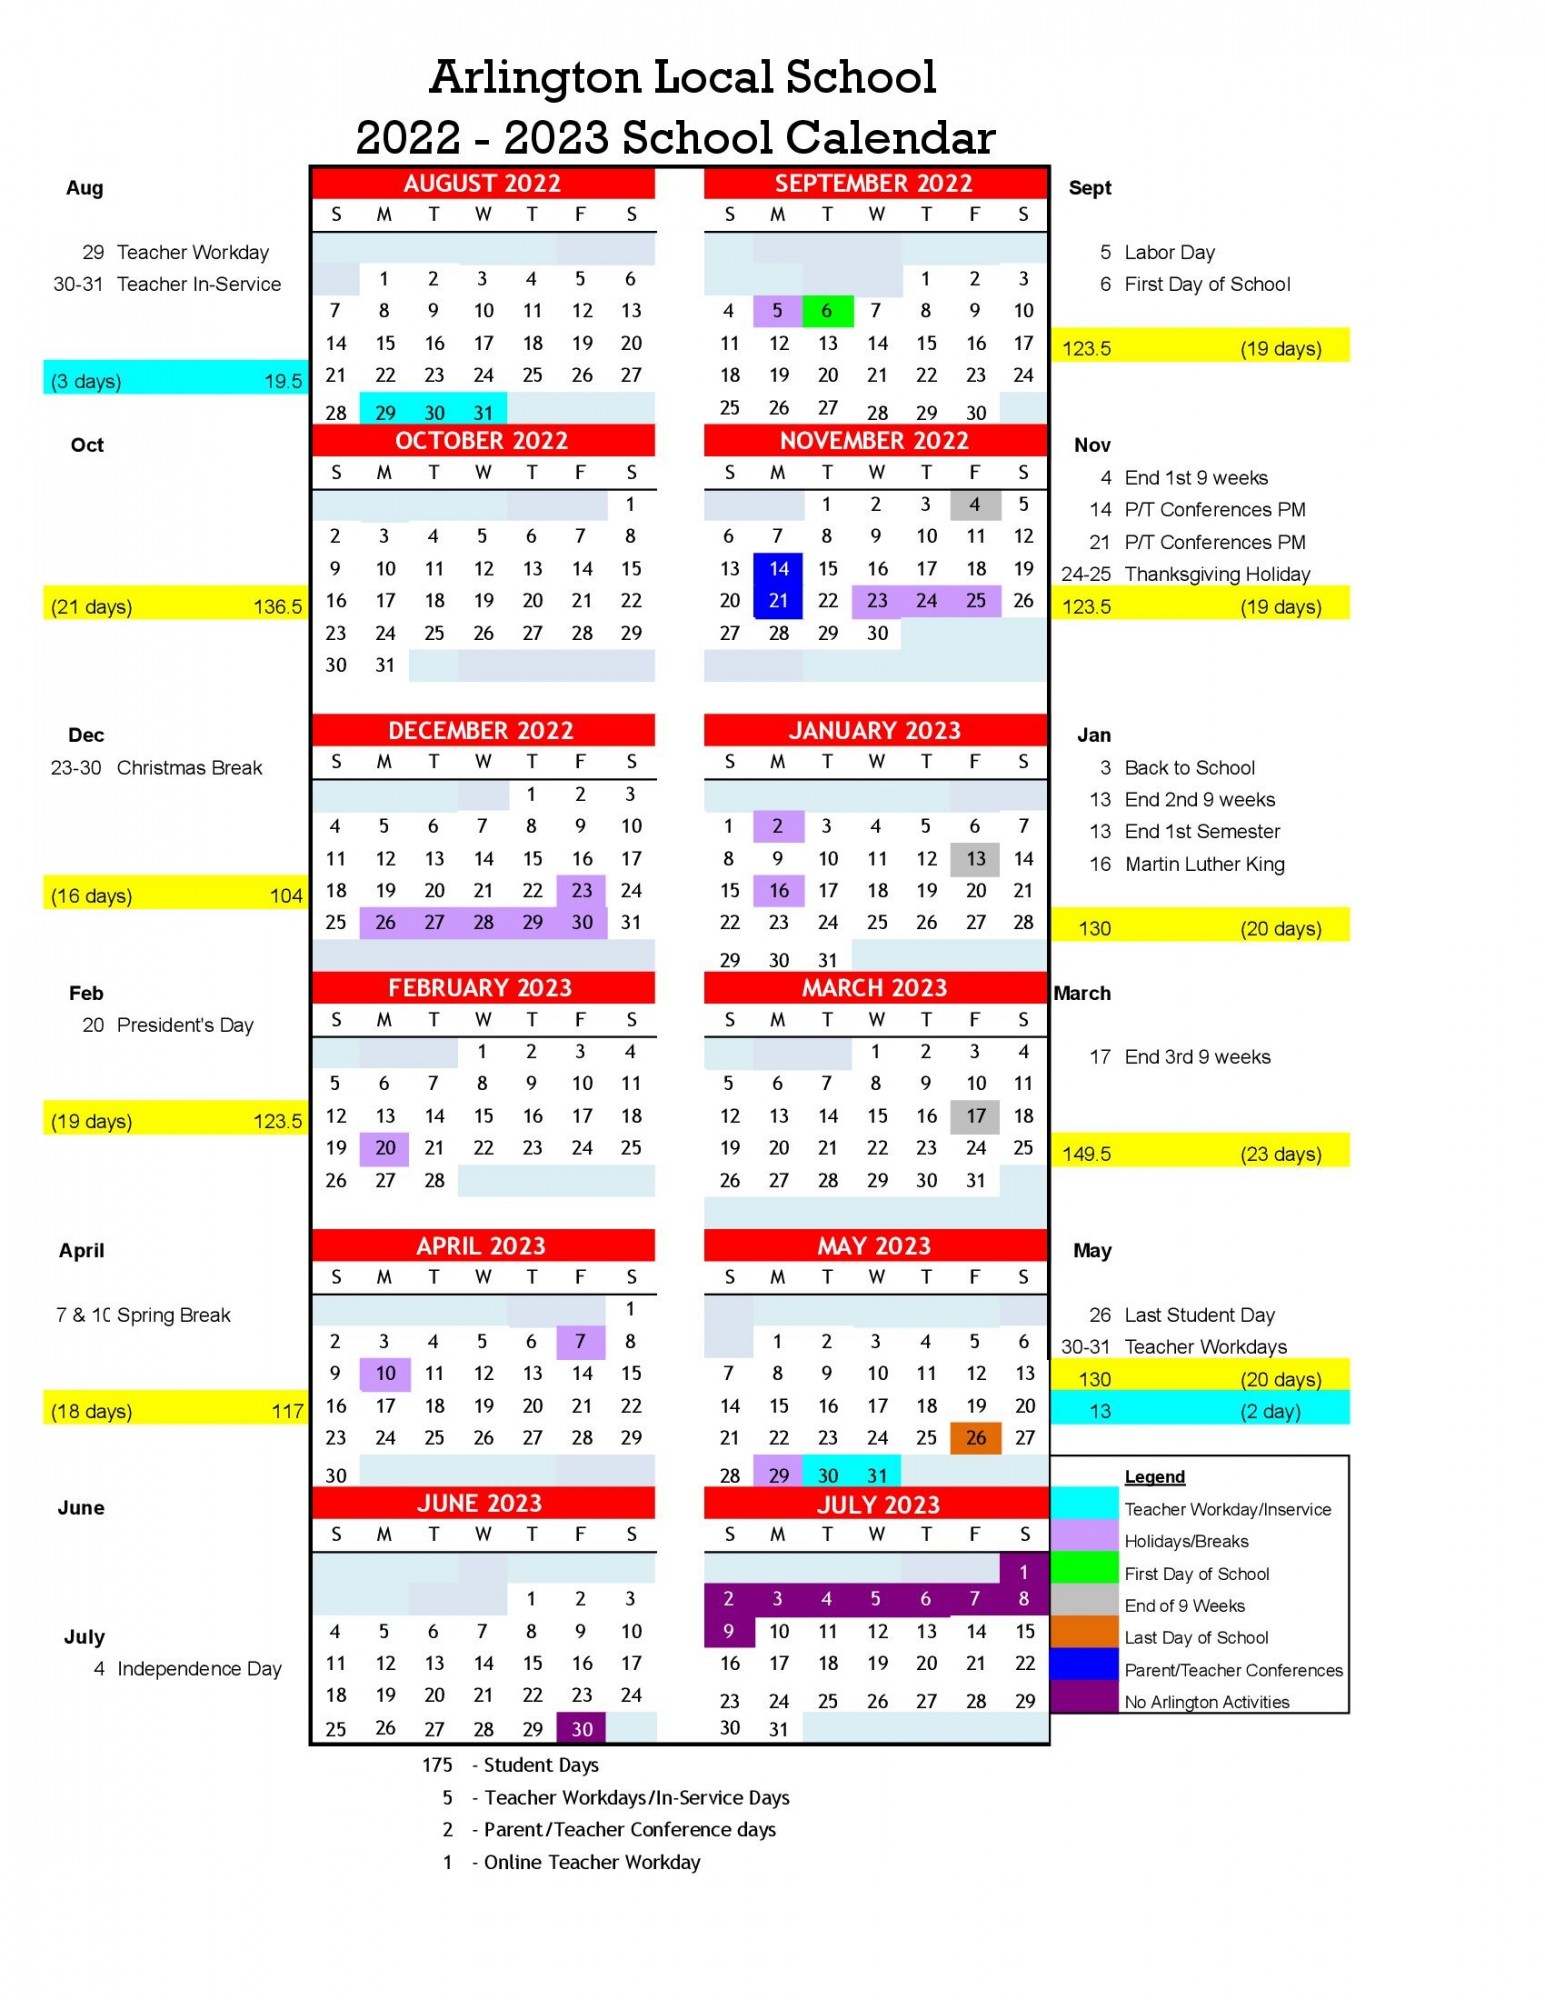 Arlington Isd Calendar 2023 2024 – Get Calendar 2023 Update